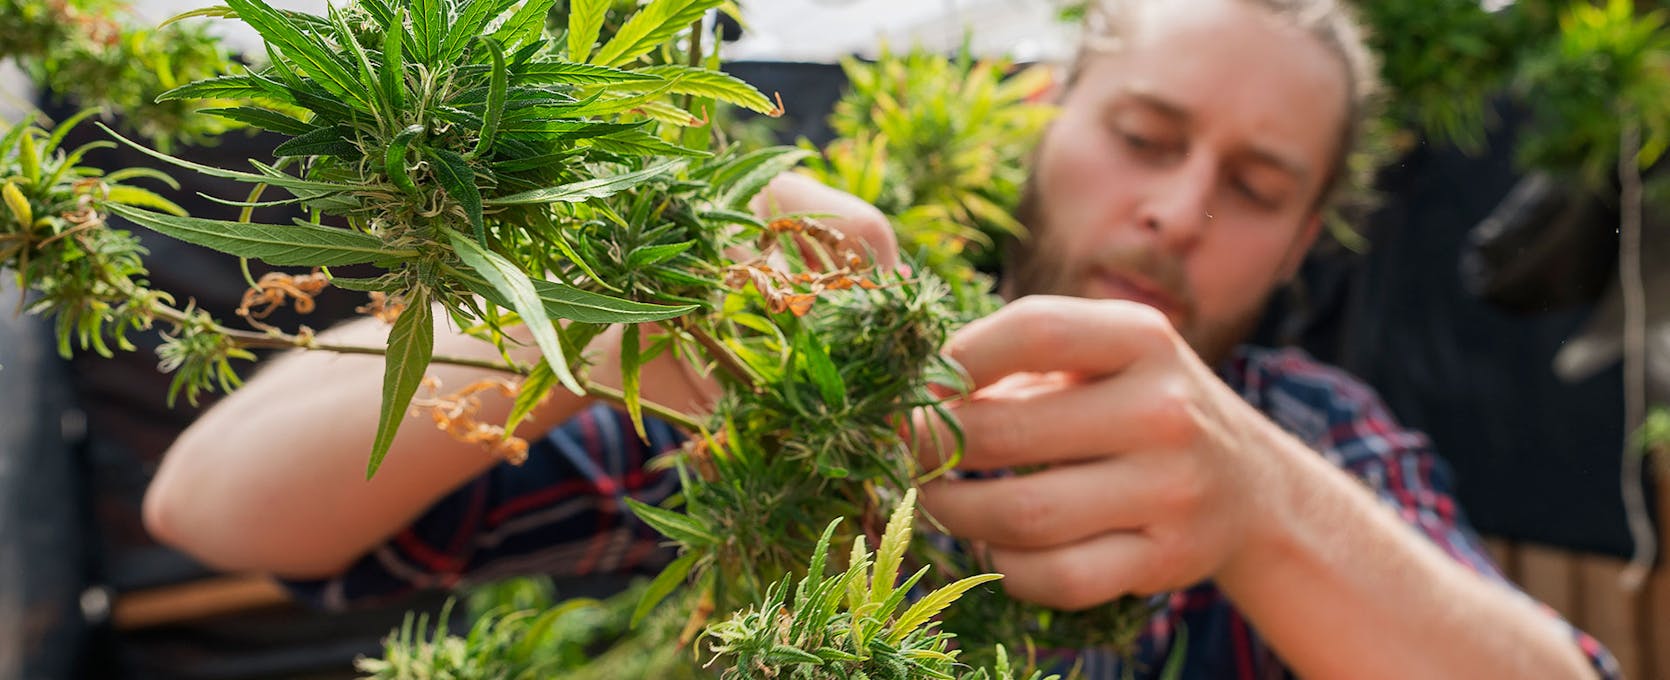 Cannabis farmer tending a plant